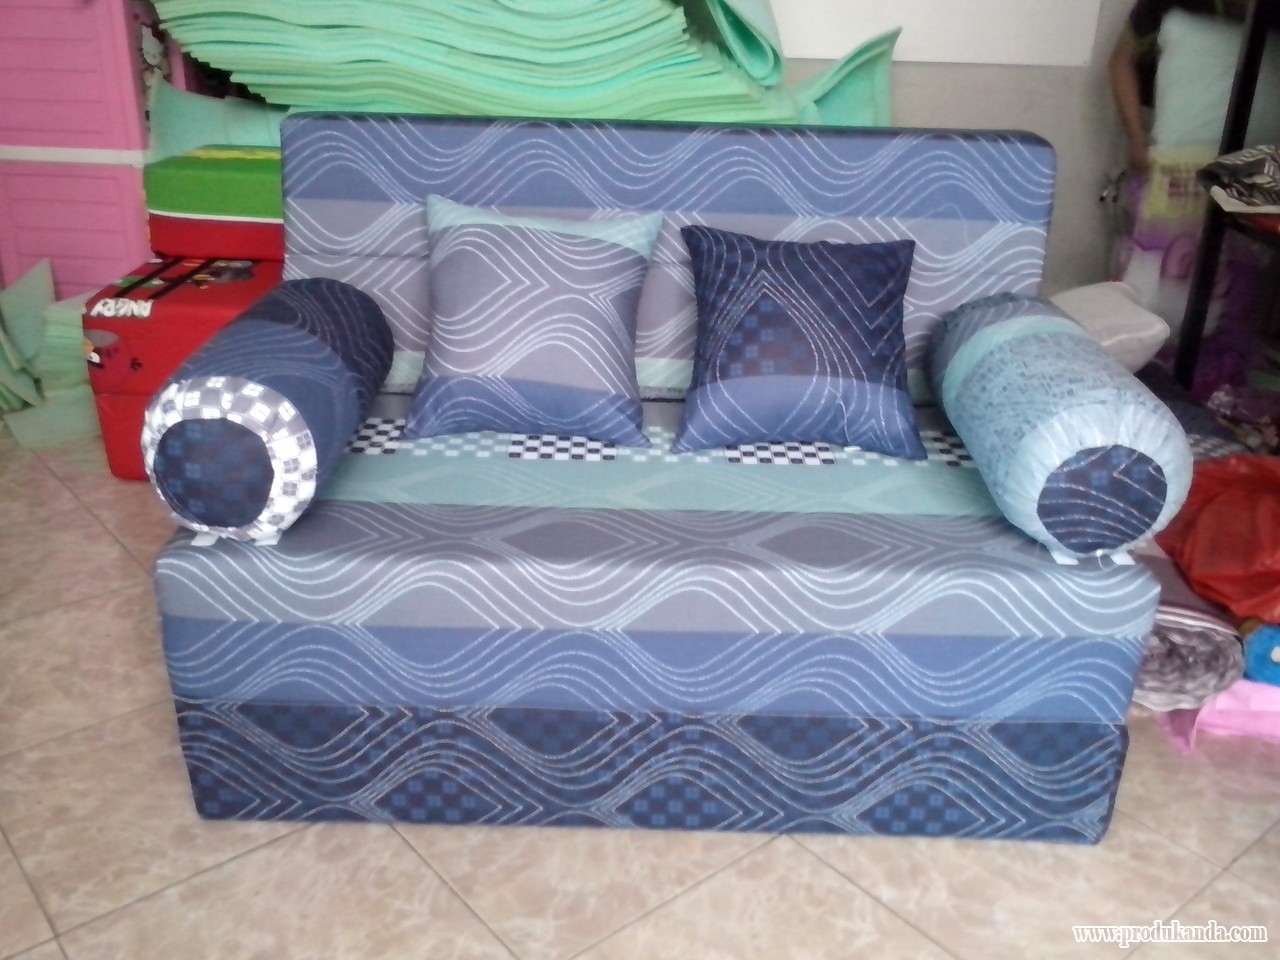 Katalog Sofa Bed Kasur Praktis Bisa Menjadi Sofa Produk Mechatronic